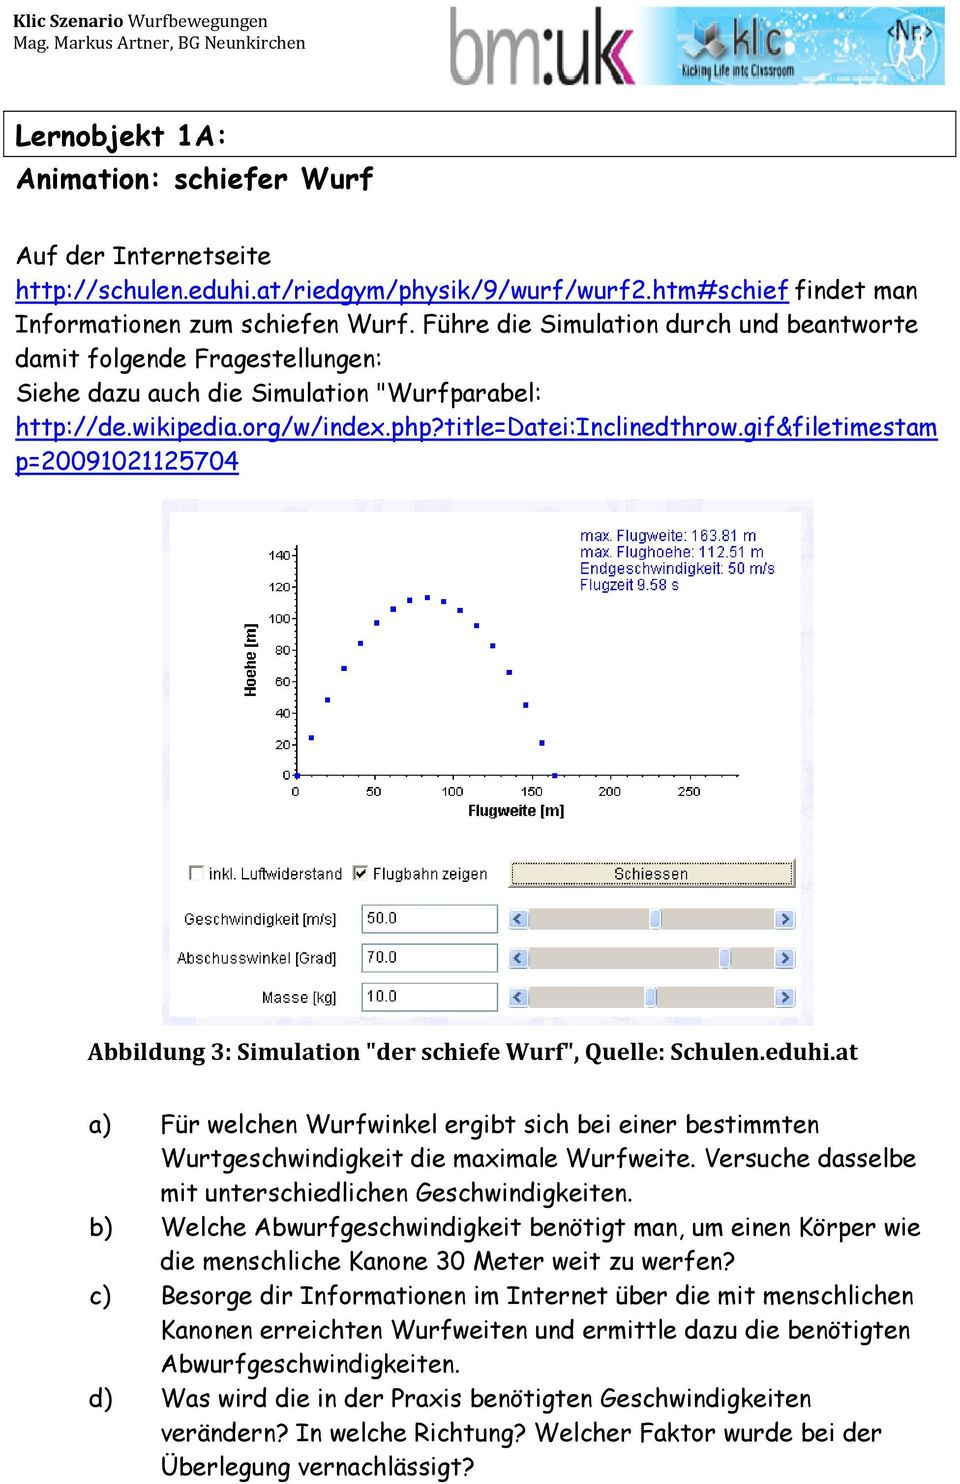 gif&filetimestam p=20091021125704 Abbildung 3: Simulation "der schiefe Wurf", Quelle: Schulen.eduhi.